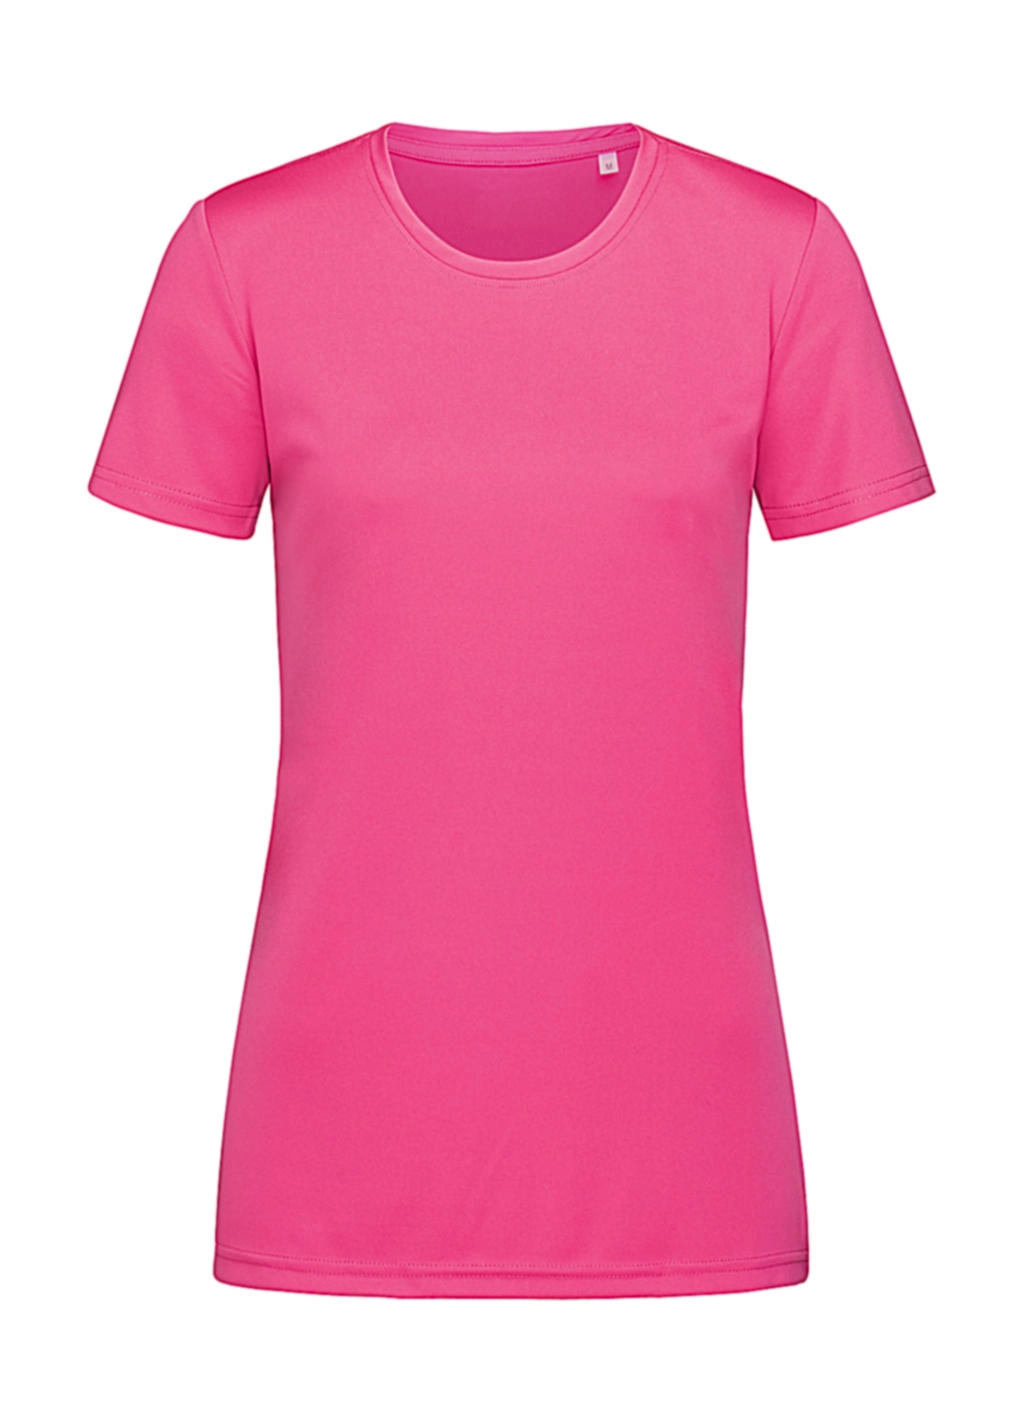 Sports-T Women zum Besticken und Bedrucken in der Farbe Sweet Pink mit Ihren Logo, Schriftzug oder Motiv.